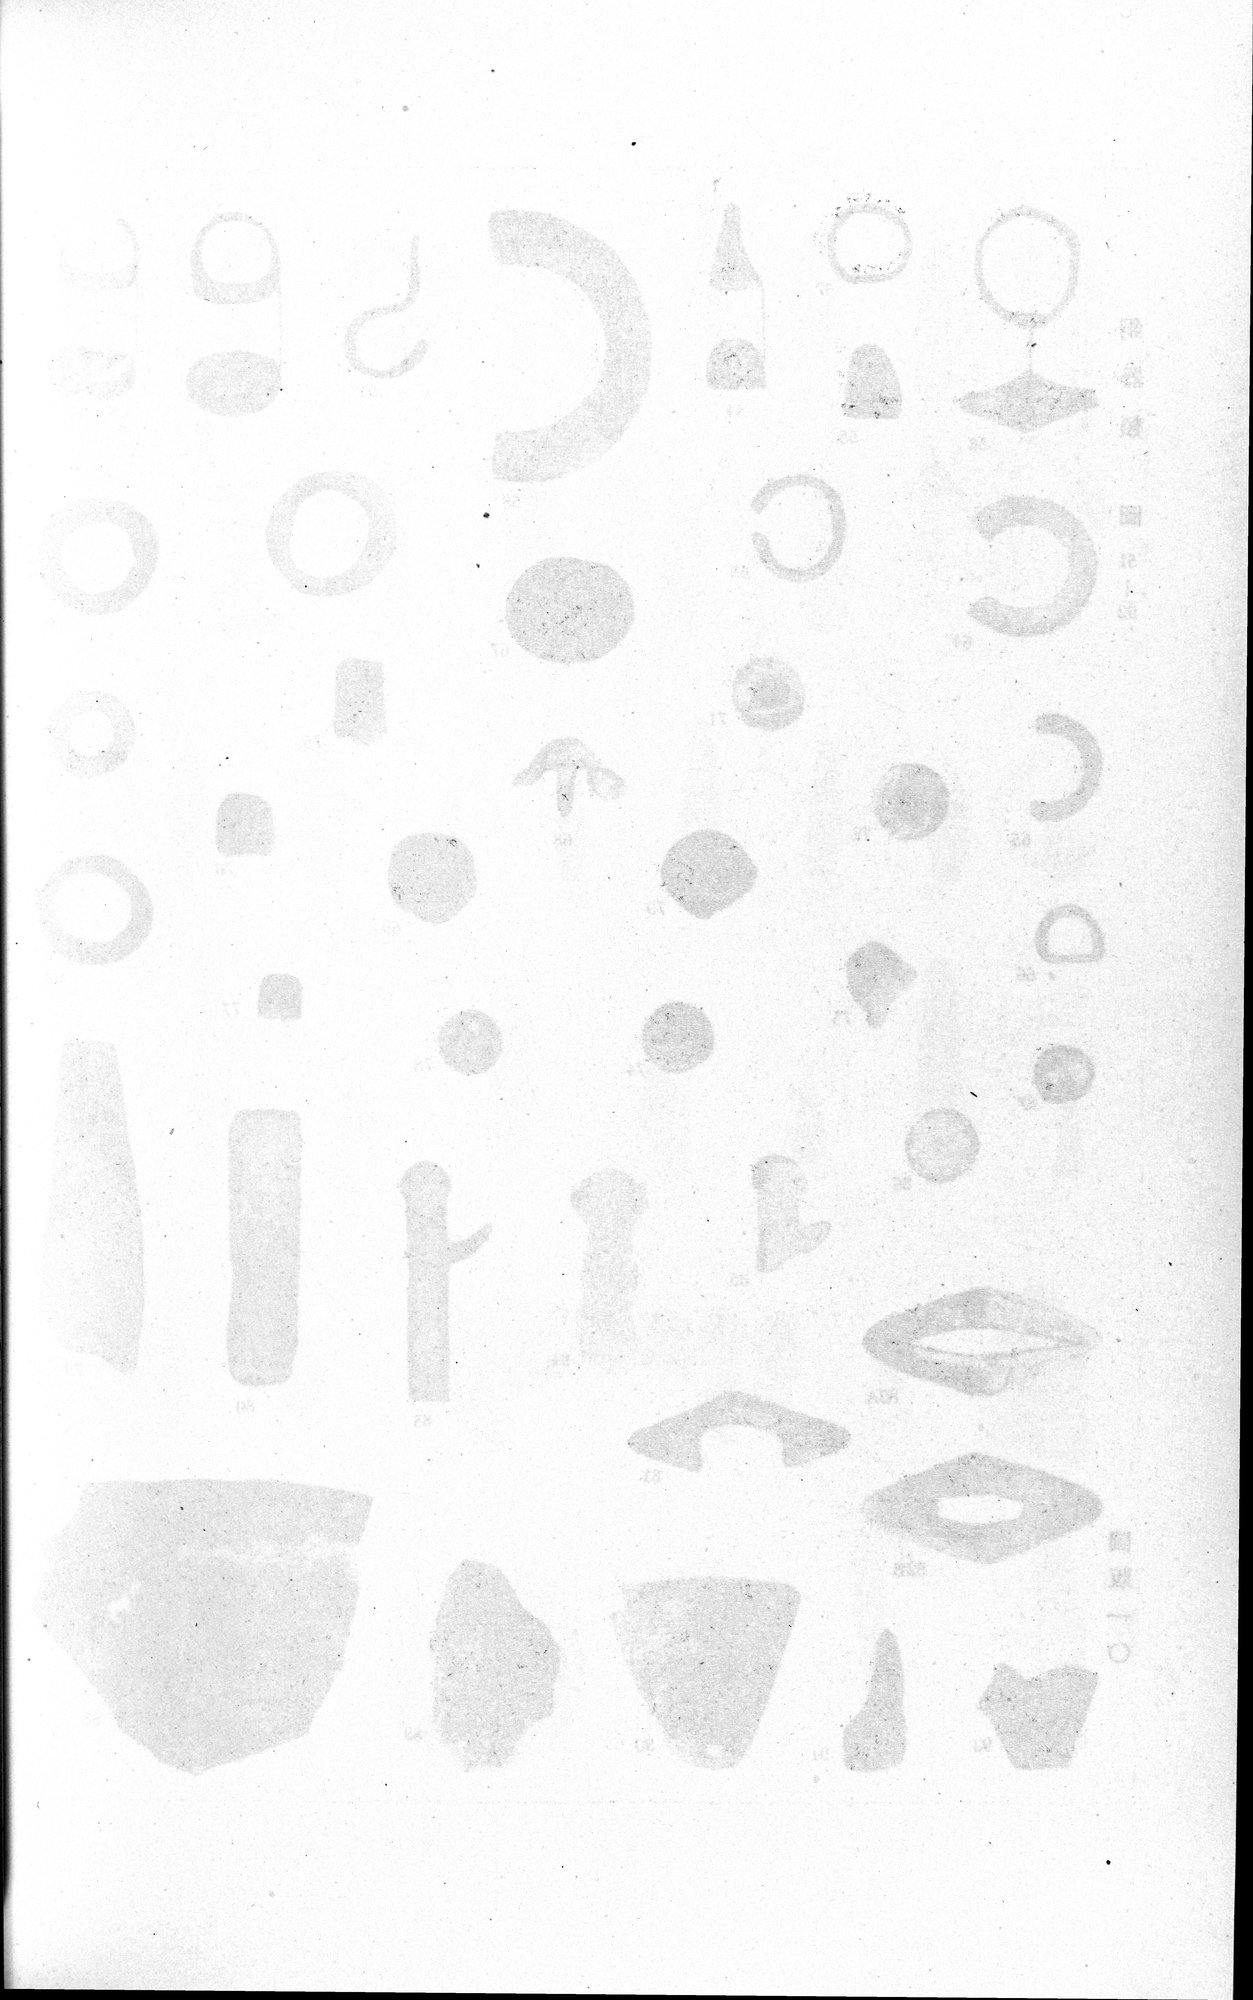 羅布淖爾考古記 : vol.1 / Page 312 (Grayscale High Resolution Image)